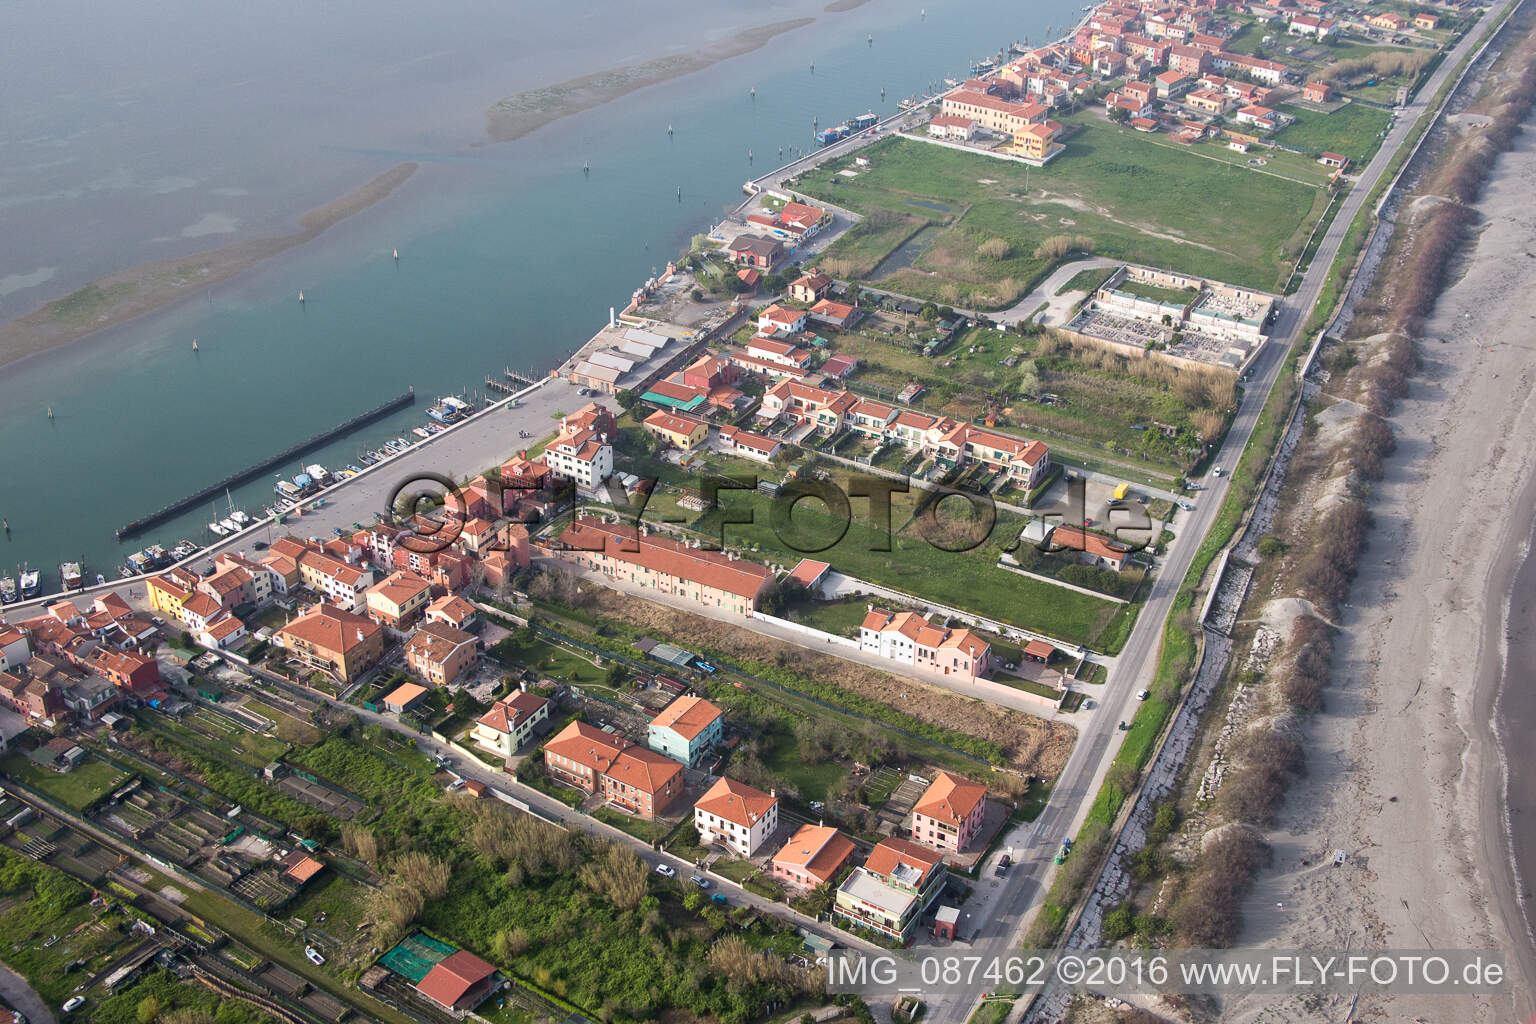 Wohnhaus- Bebauung auf der Halbinsel Lido di Venecia im Ortsteil San Pietro in Volta in Venedig in Venetien, Italien aus der Luft